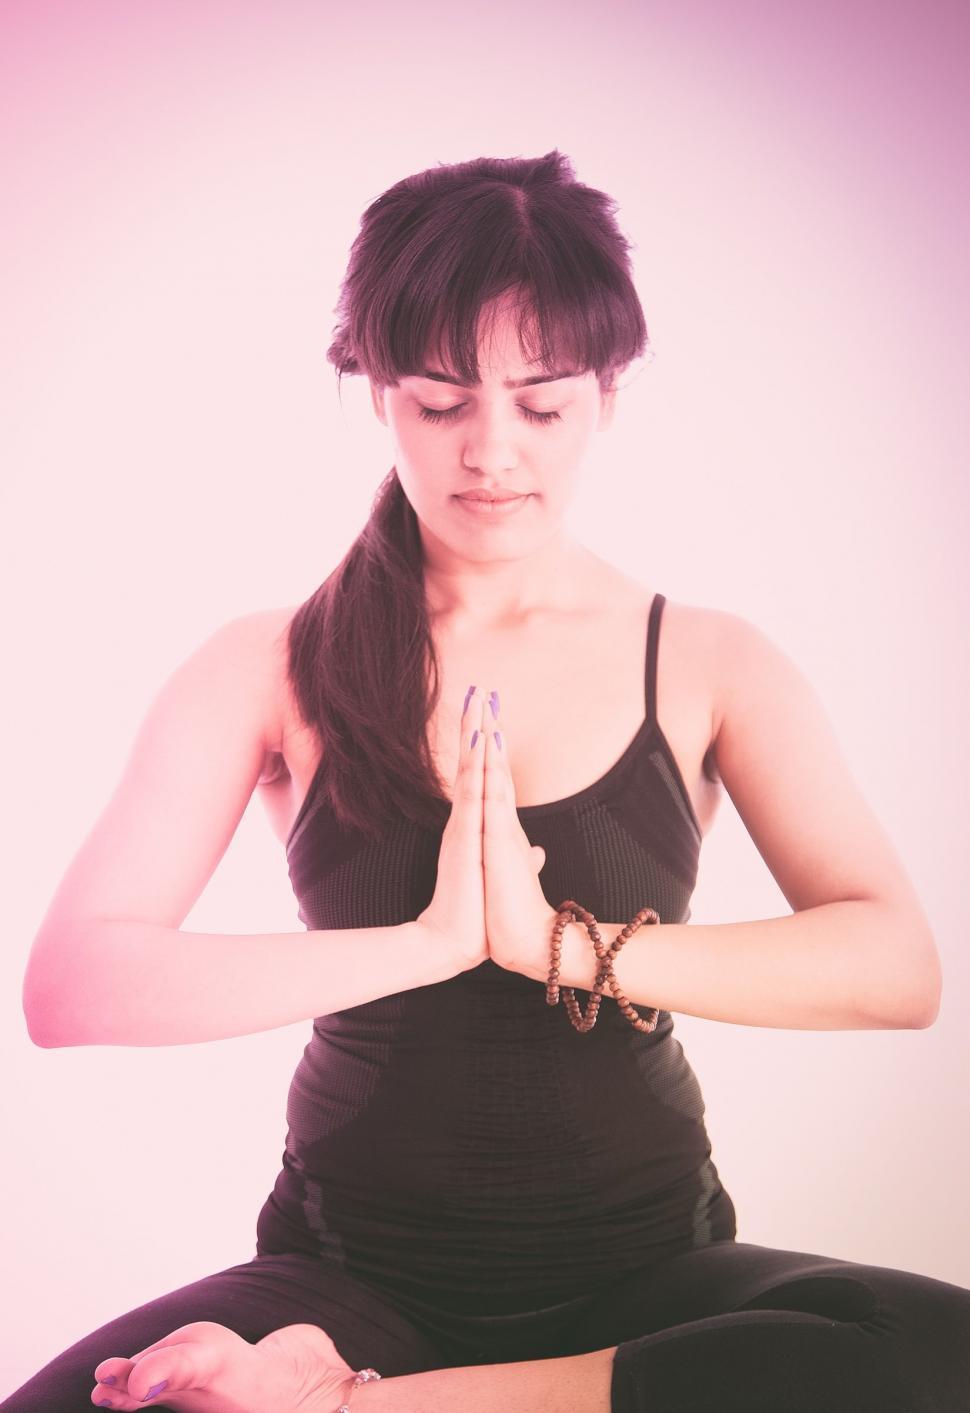 Free Image of Yoga Pose - Namaste 